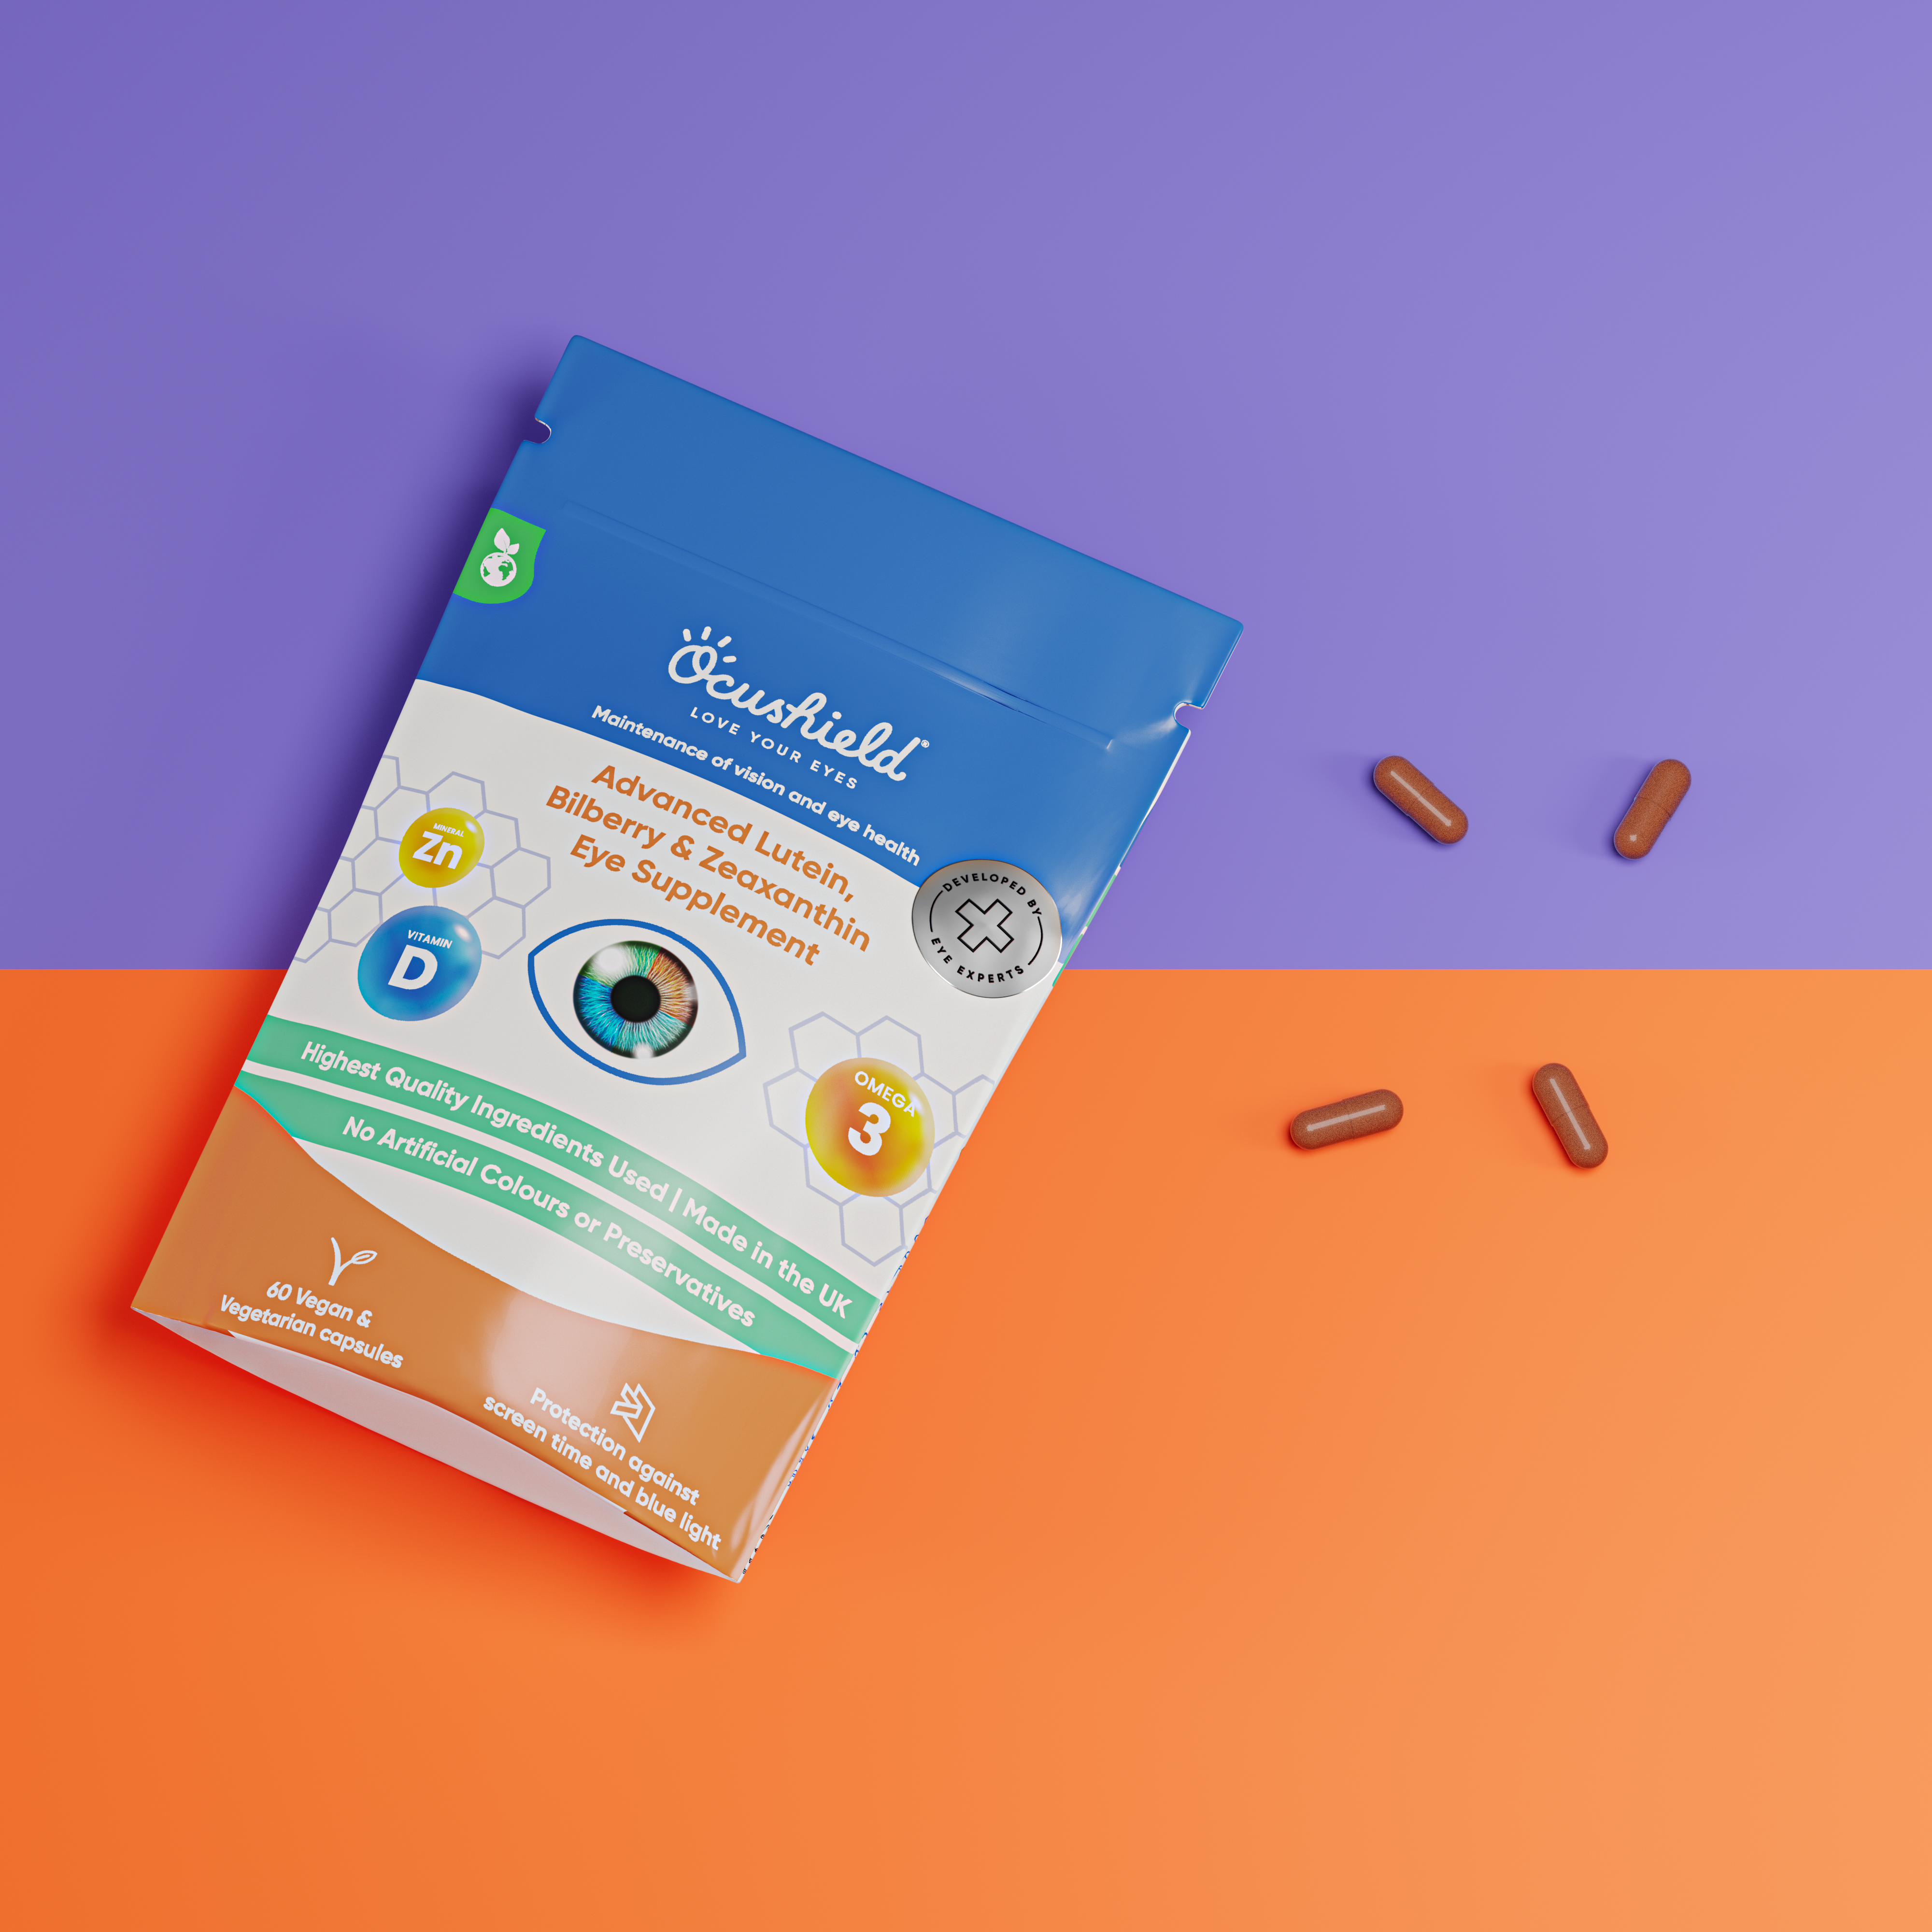 Ocushield’s Advance 360 Eye Supplement